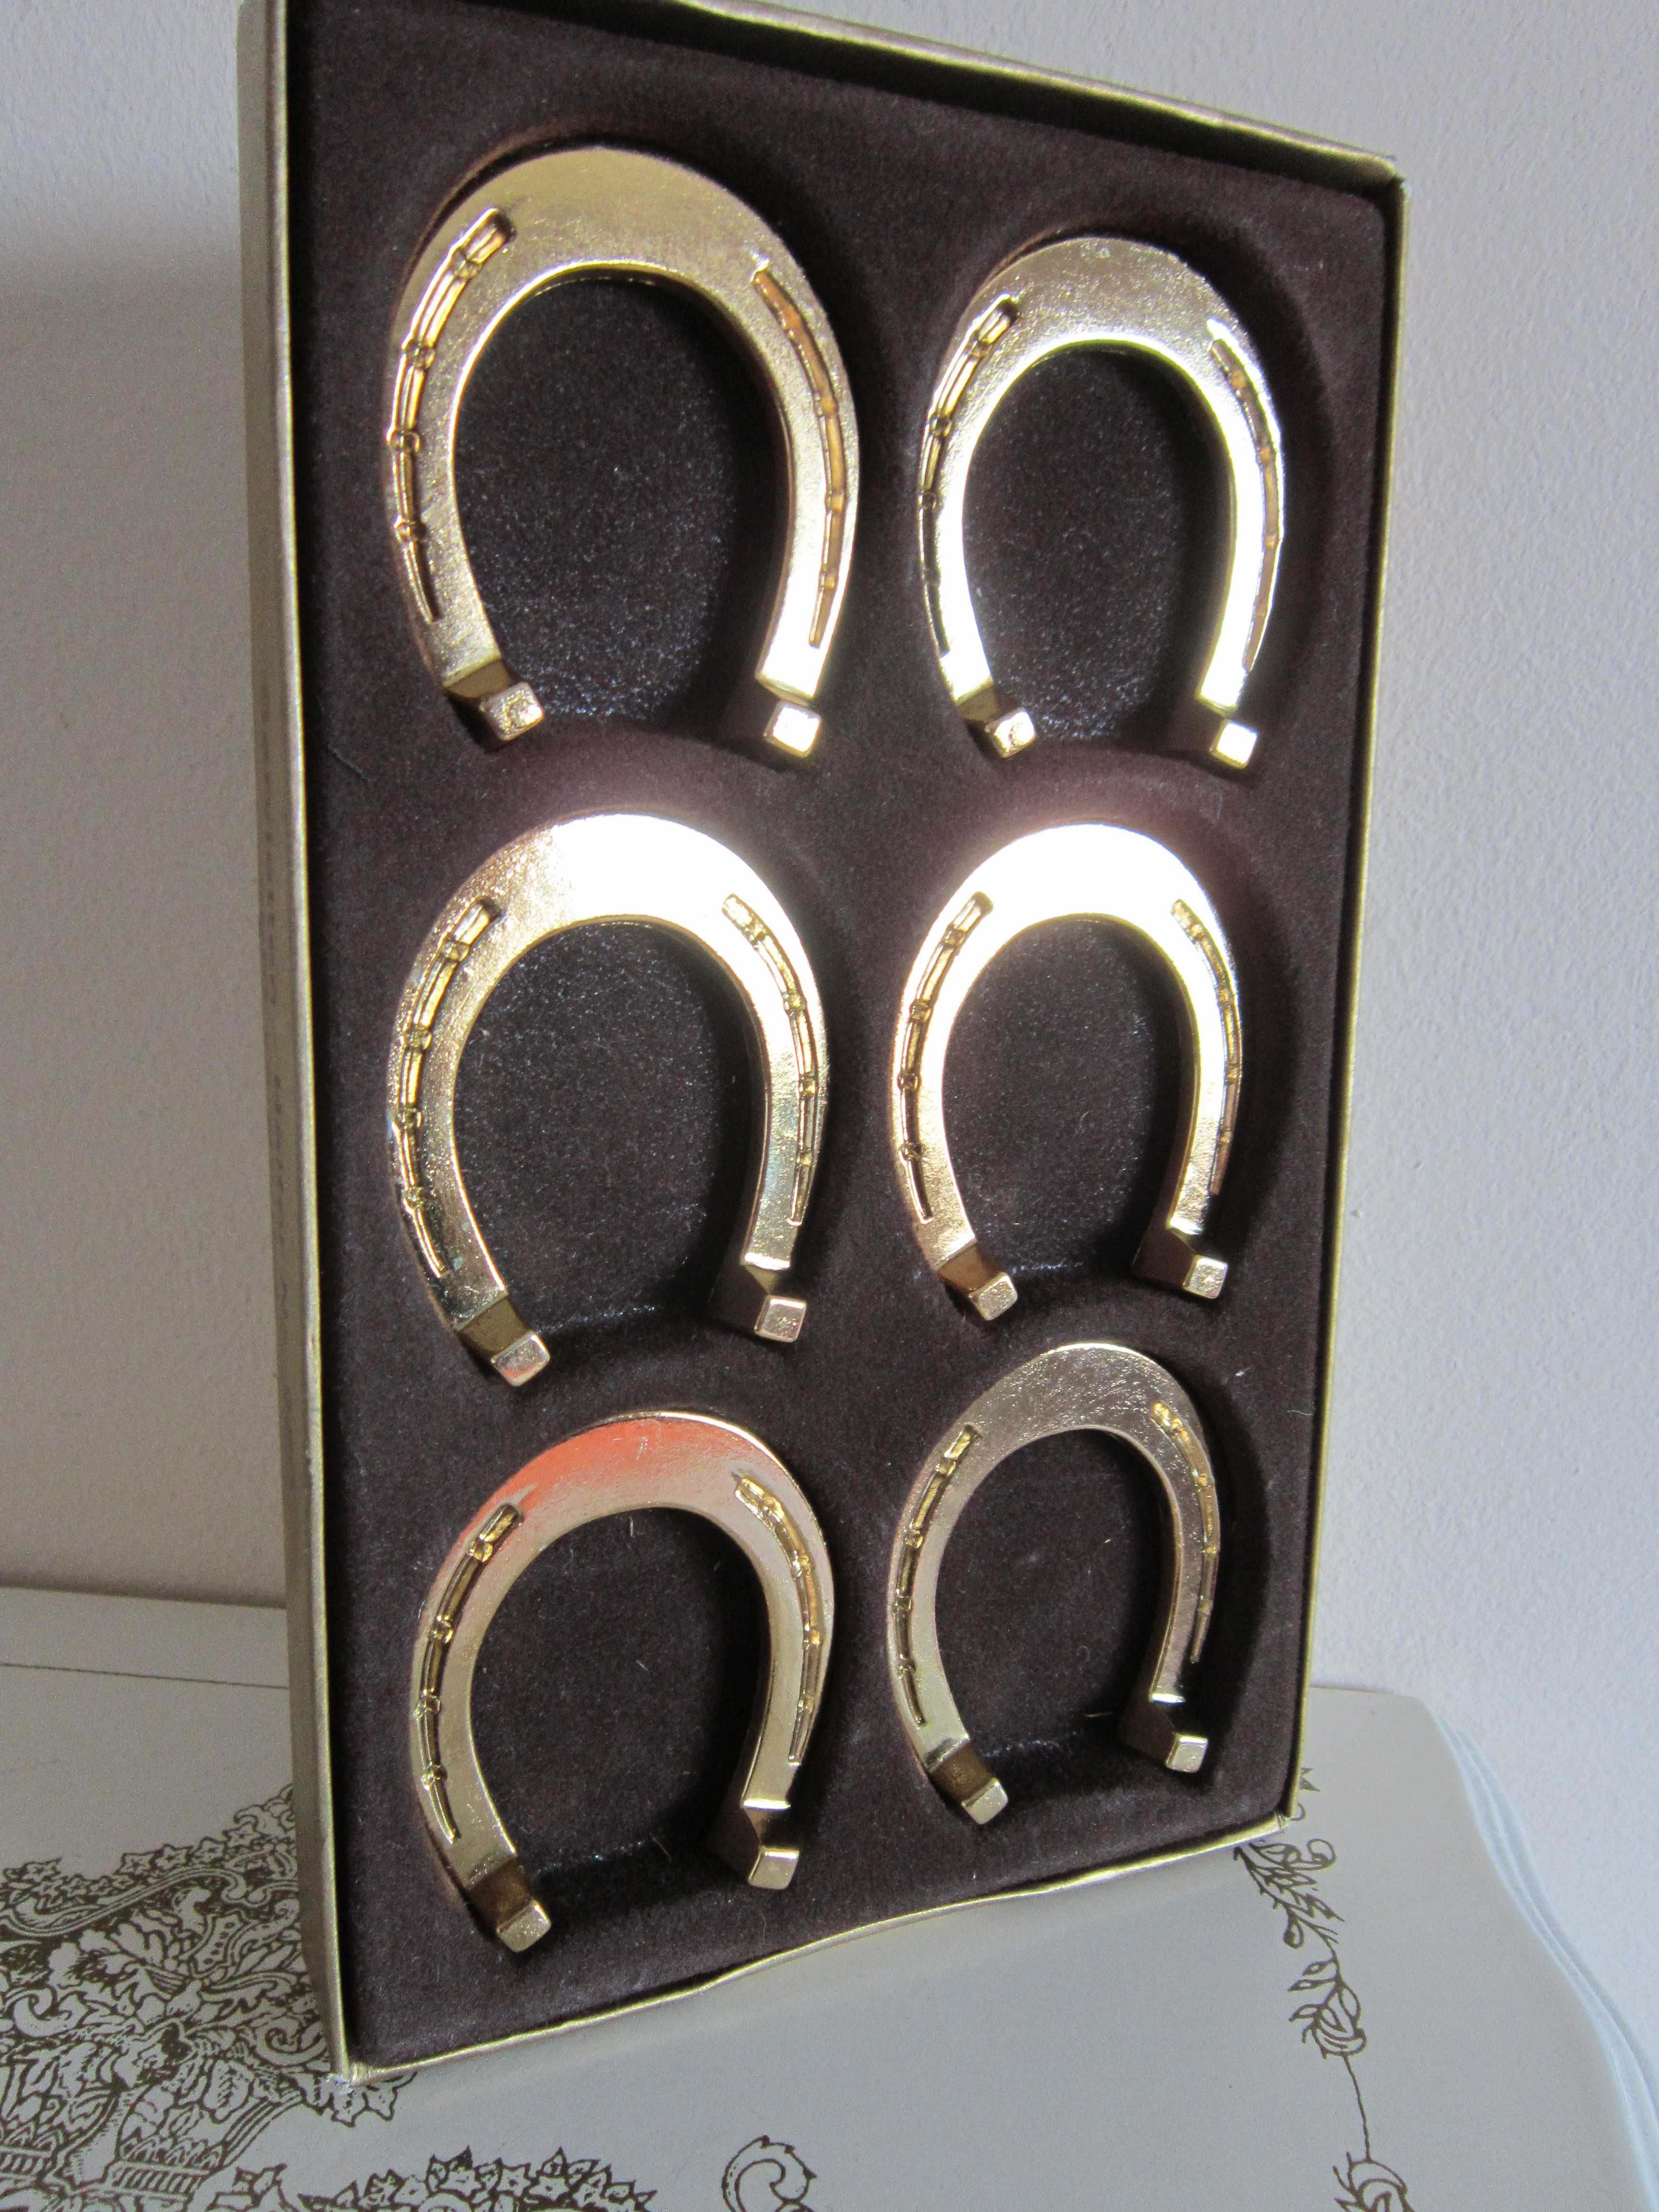 cadou rar 6 potcoave metalice placate cu aur colectie Germania anii'60